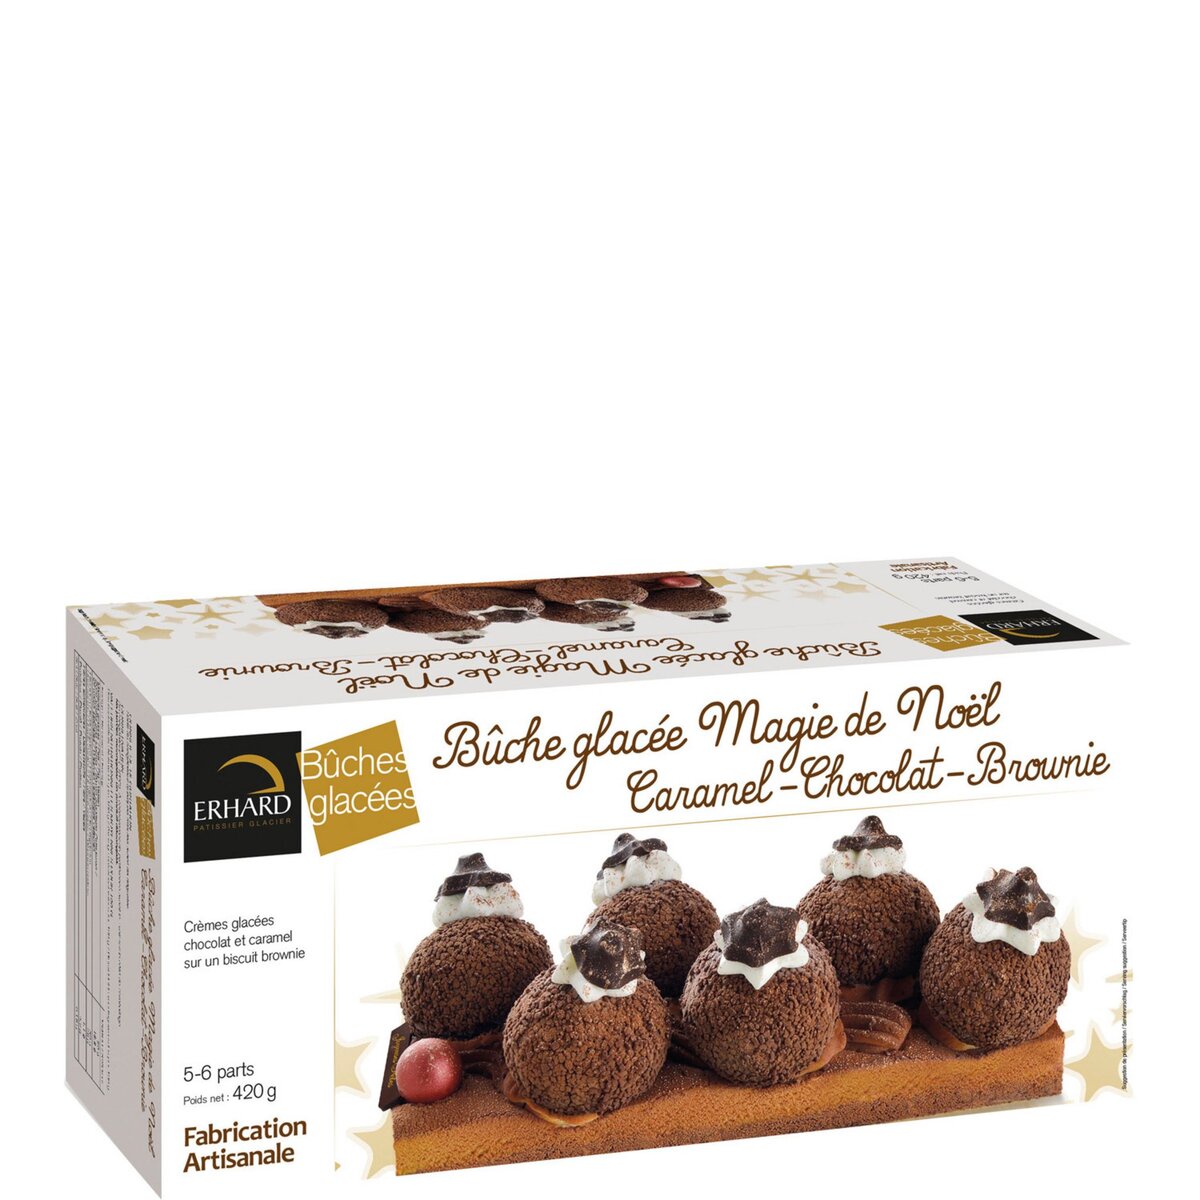 ERHARD Bûche glacée Magie de Noël caramel chocolat et brownie 5-6 parts 420g